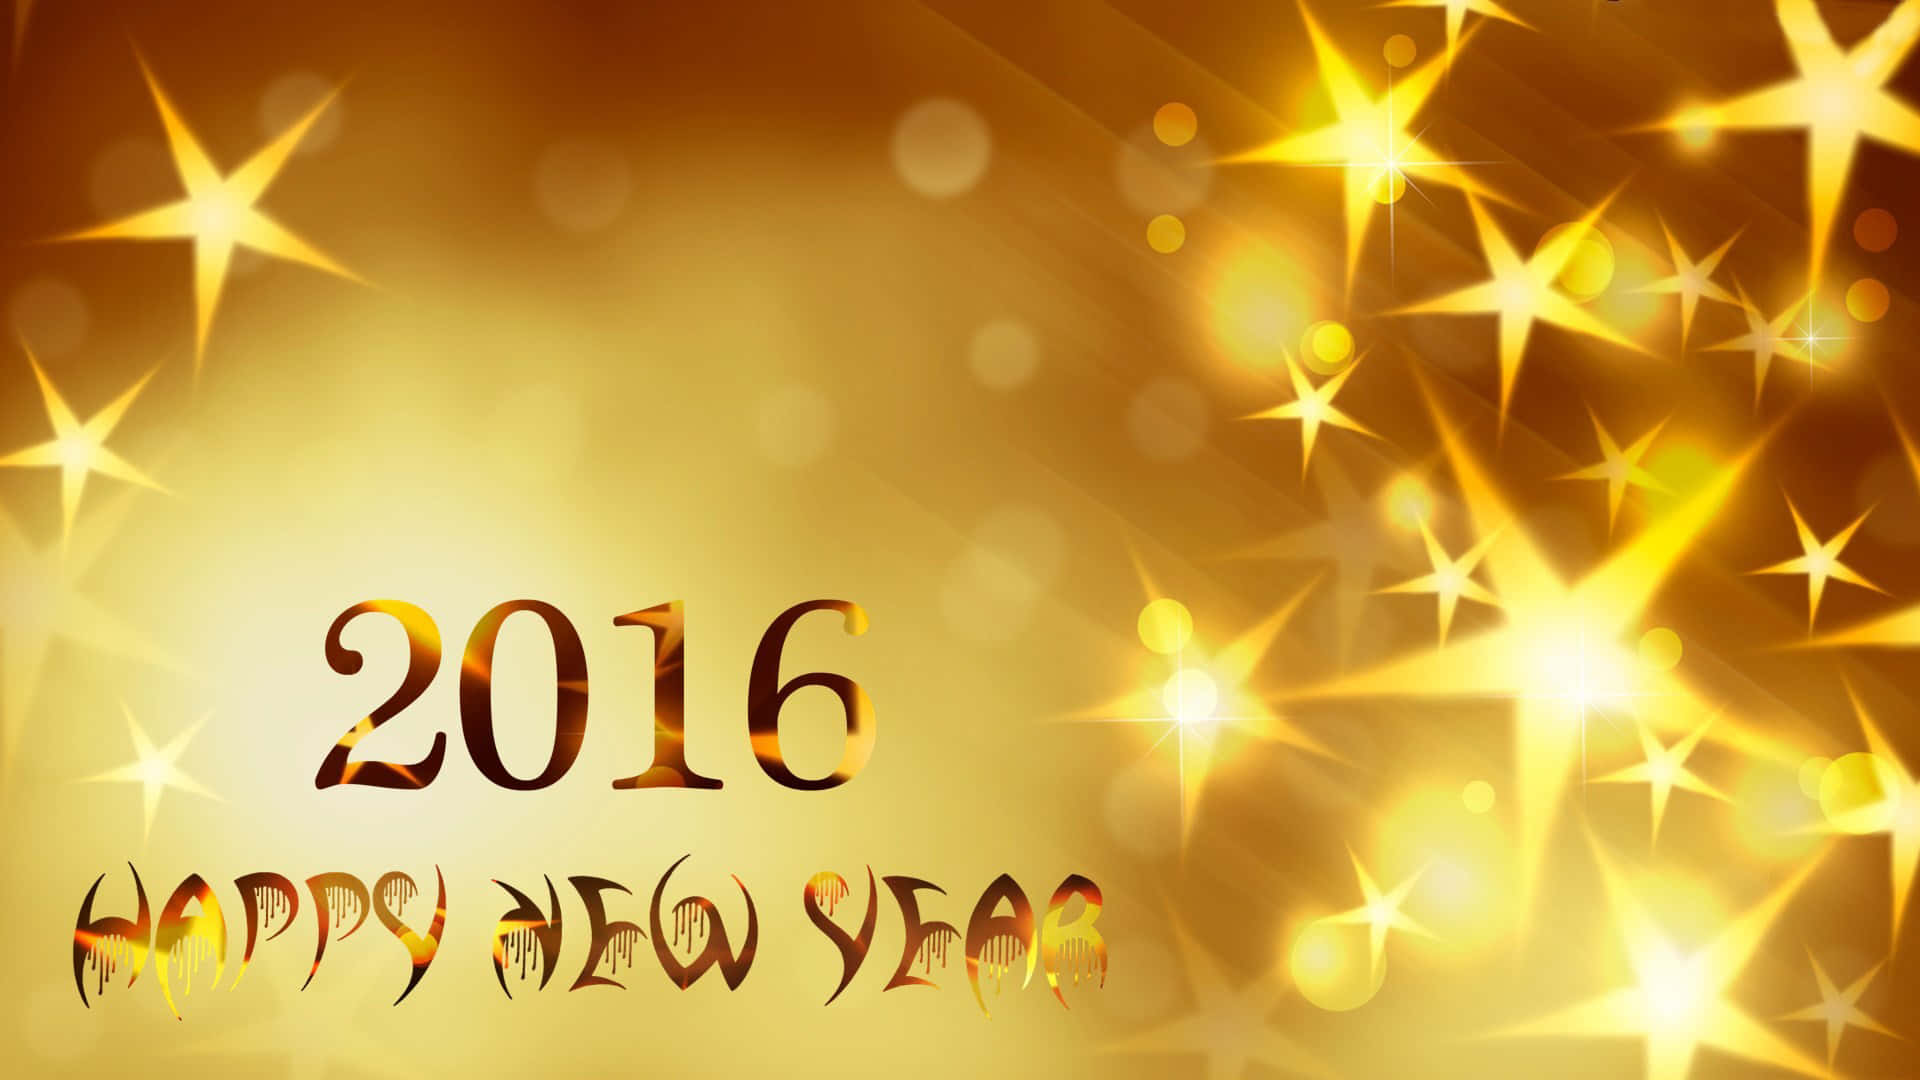 Neuesjahr Mit Goldenen Sternen 2016 Als Hintergrund